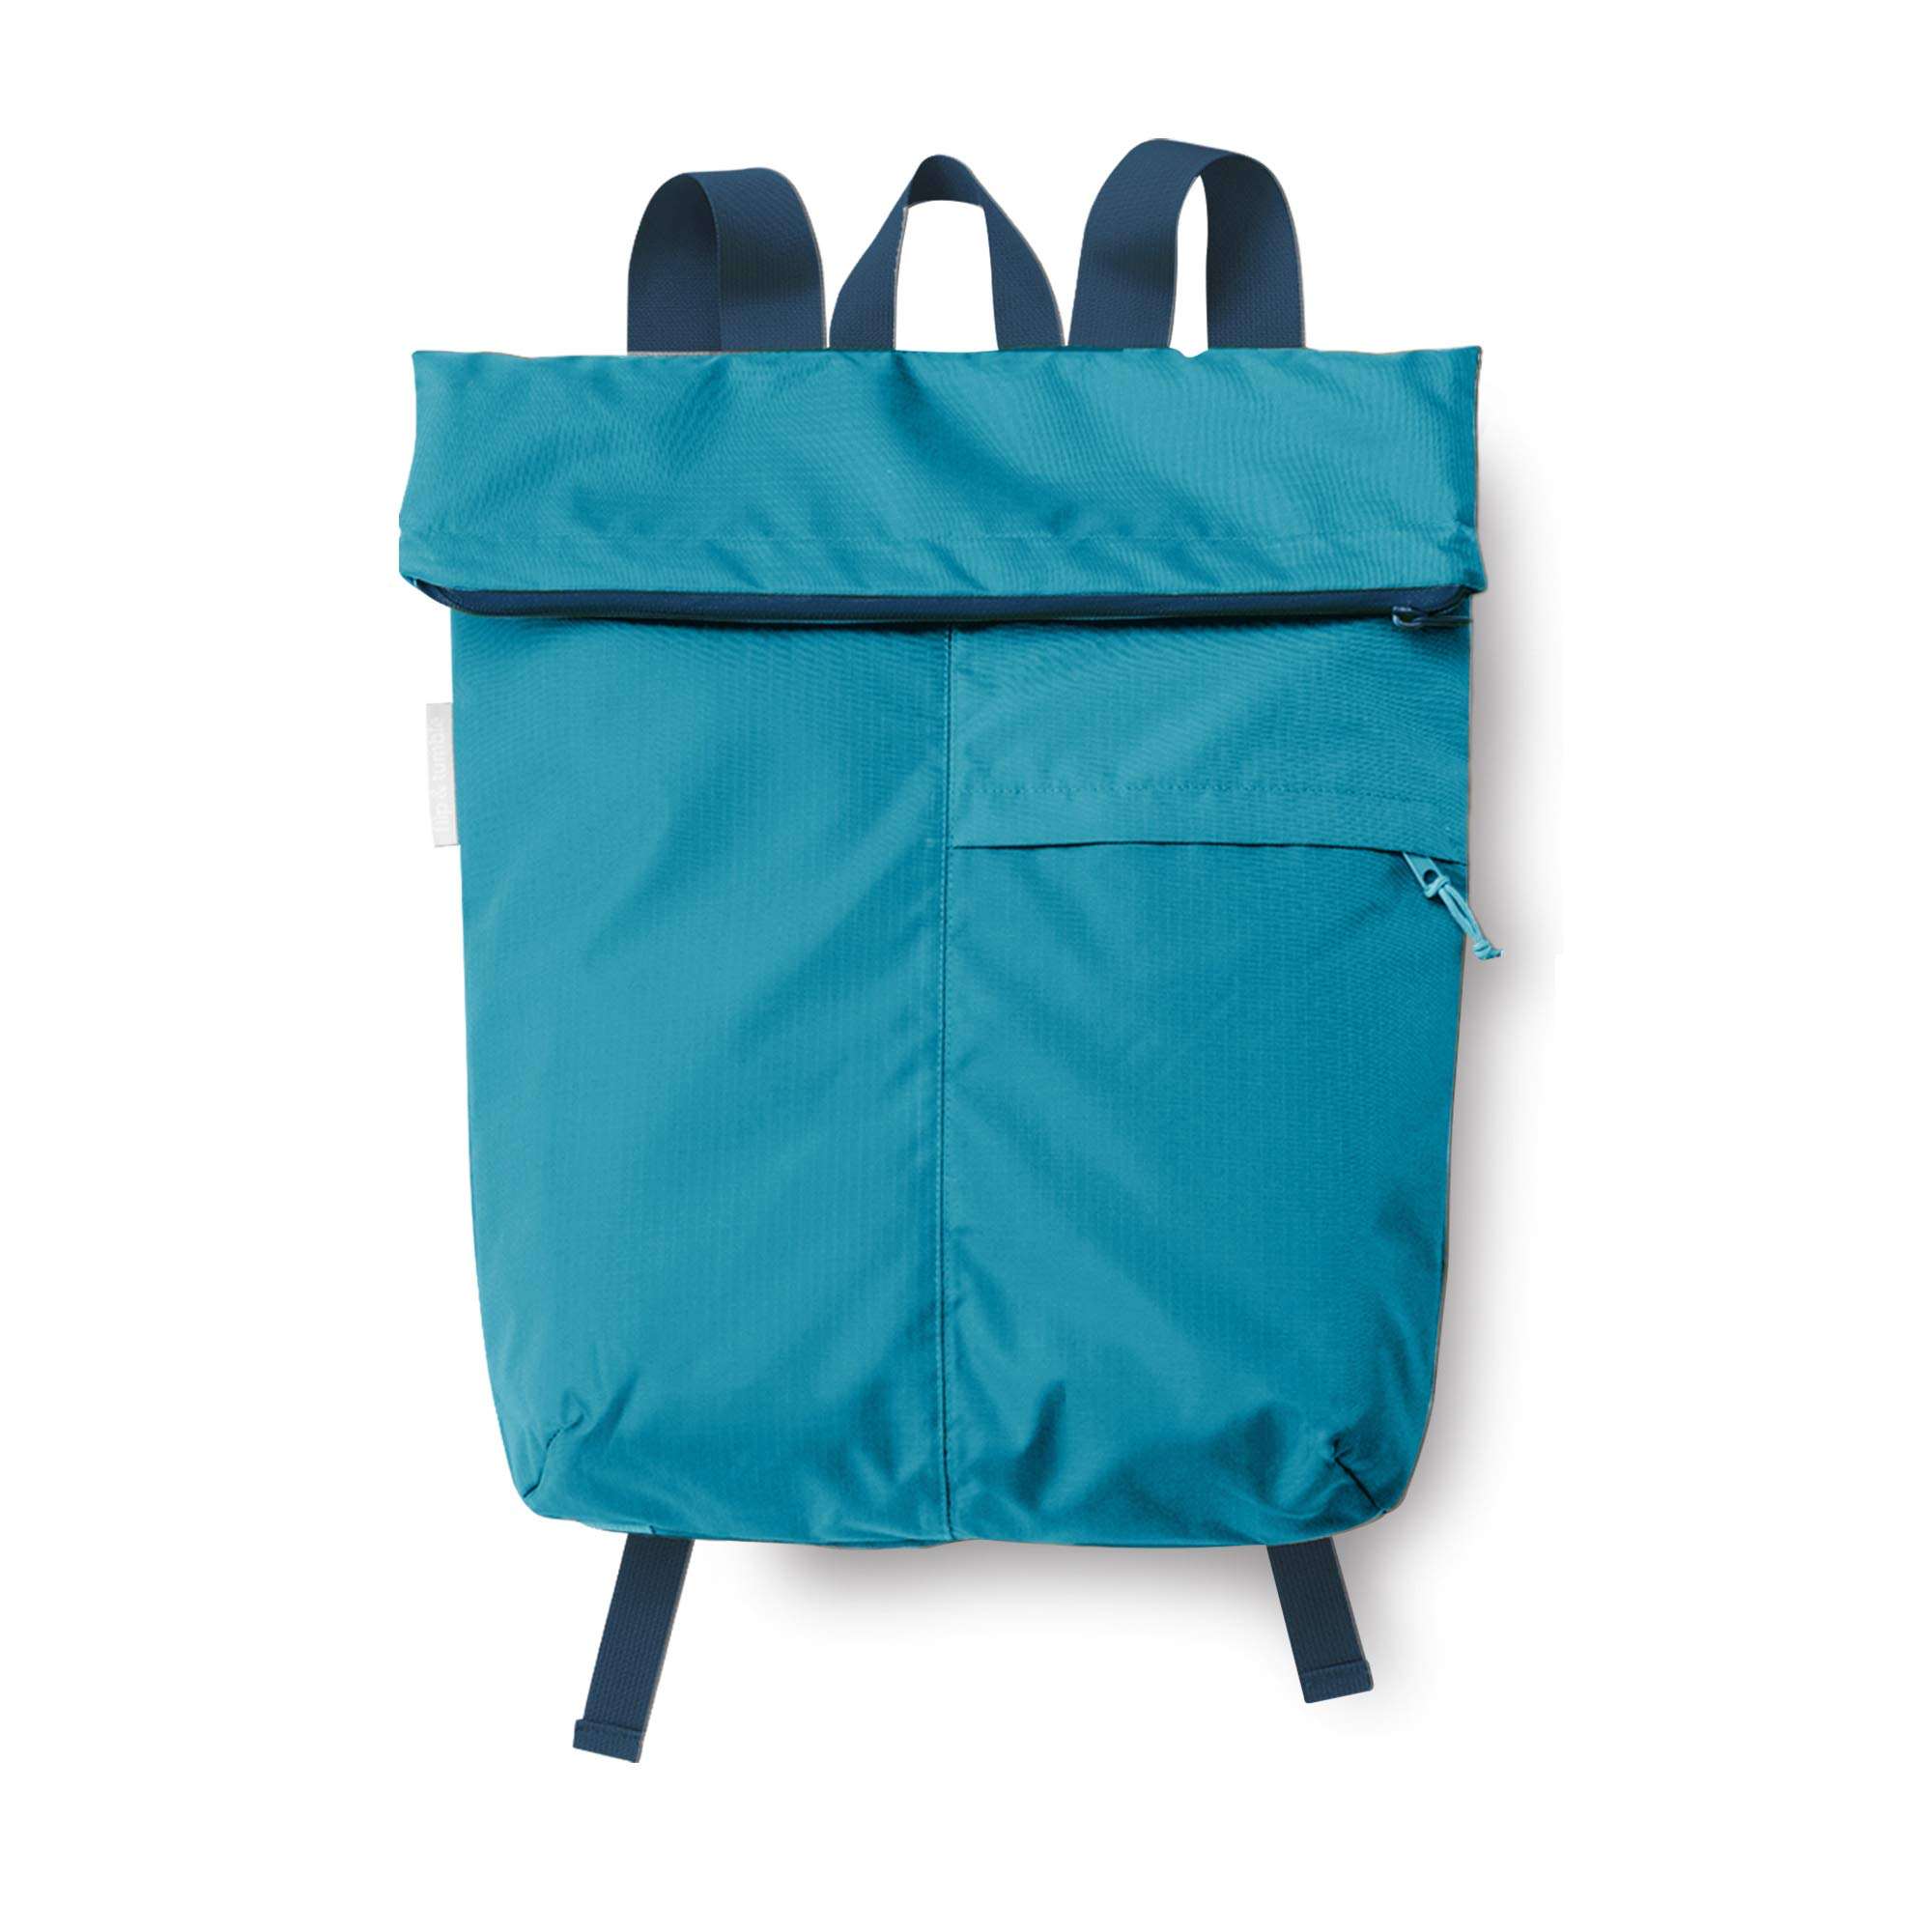 Neuer leichter faltbarer Rucksack in Pacific Blue, wiederverwendbarer Tagesrucksack, Einkaufsrucksack für Männer und Frauen